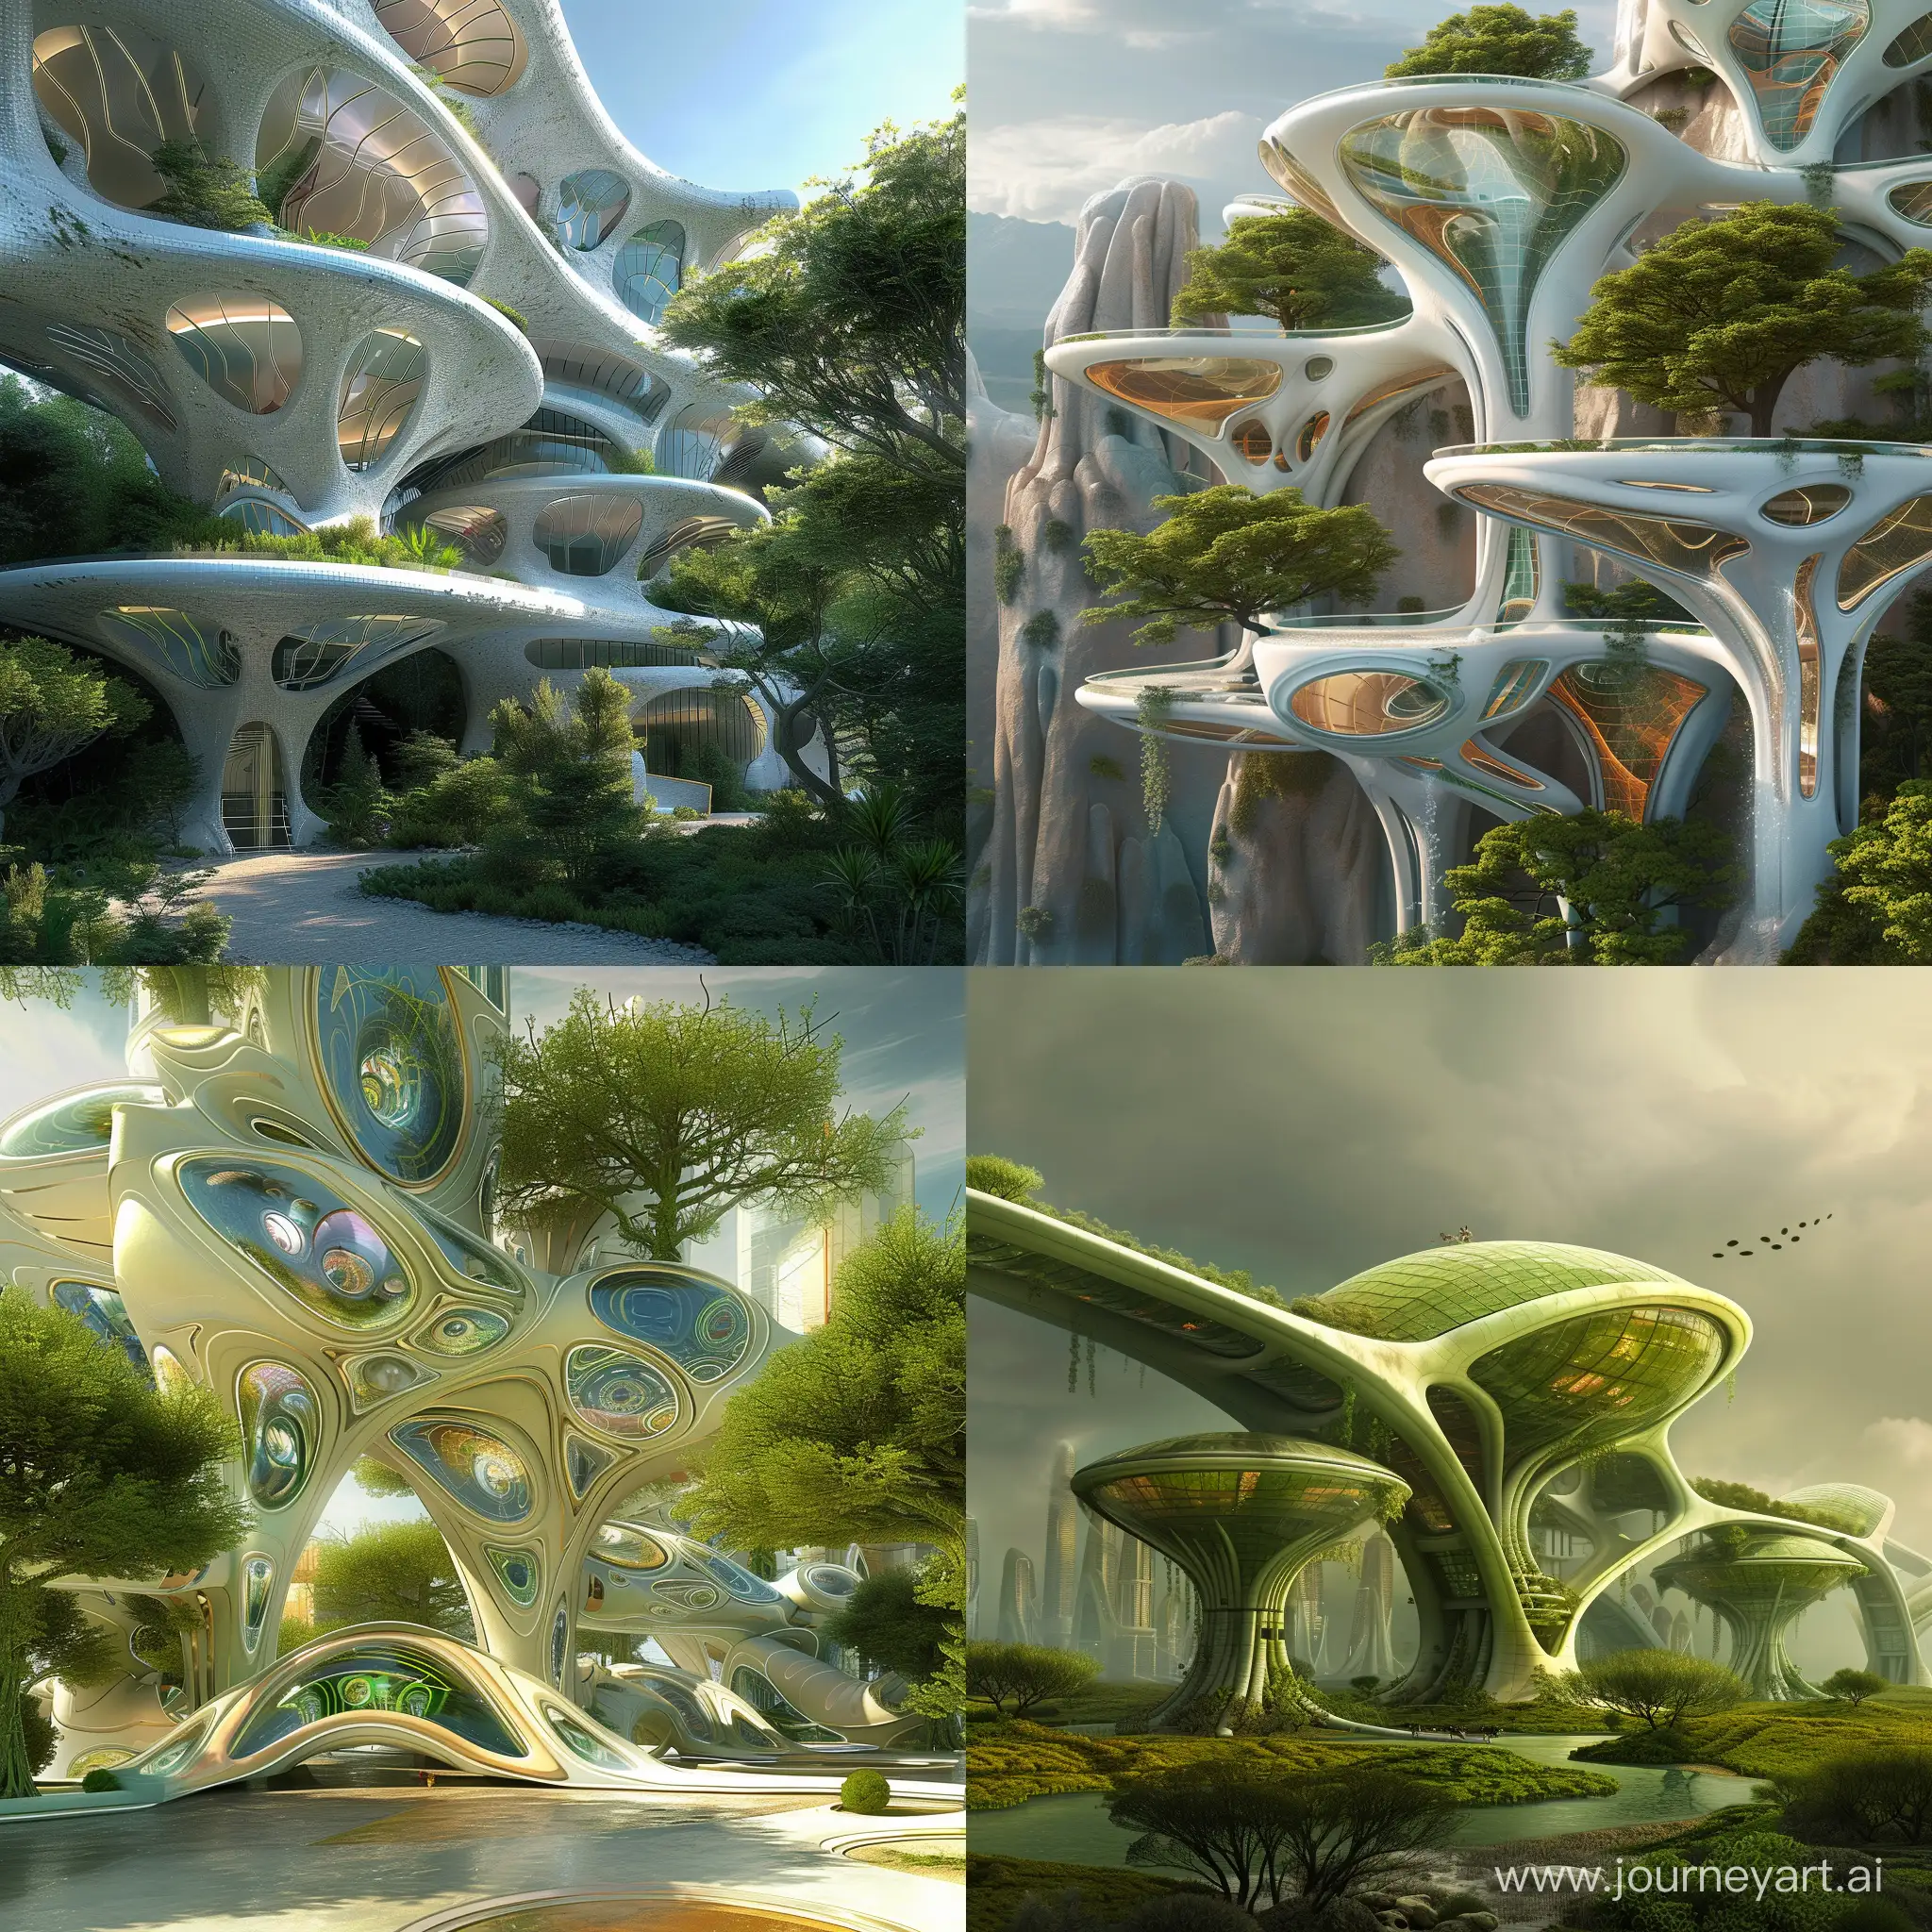 Futuristic-Bioarchitecture-Fantasy-Design-by-Bob-Mackie